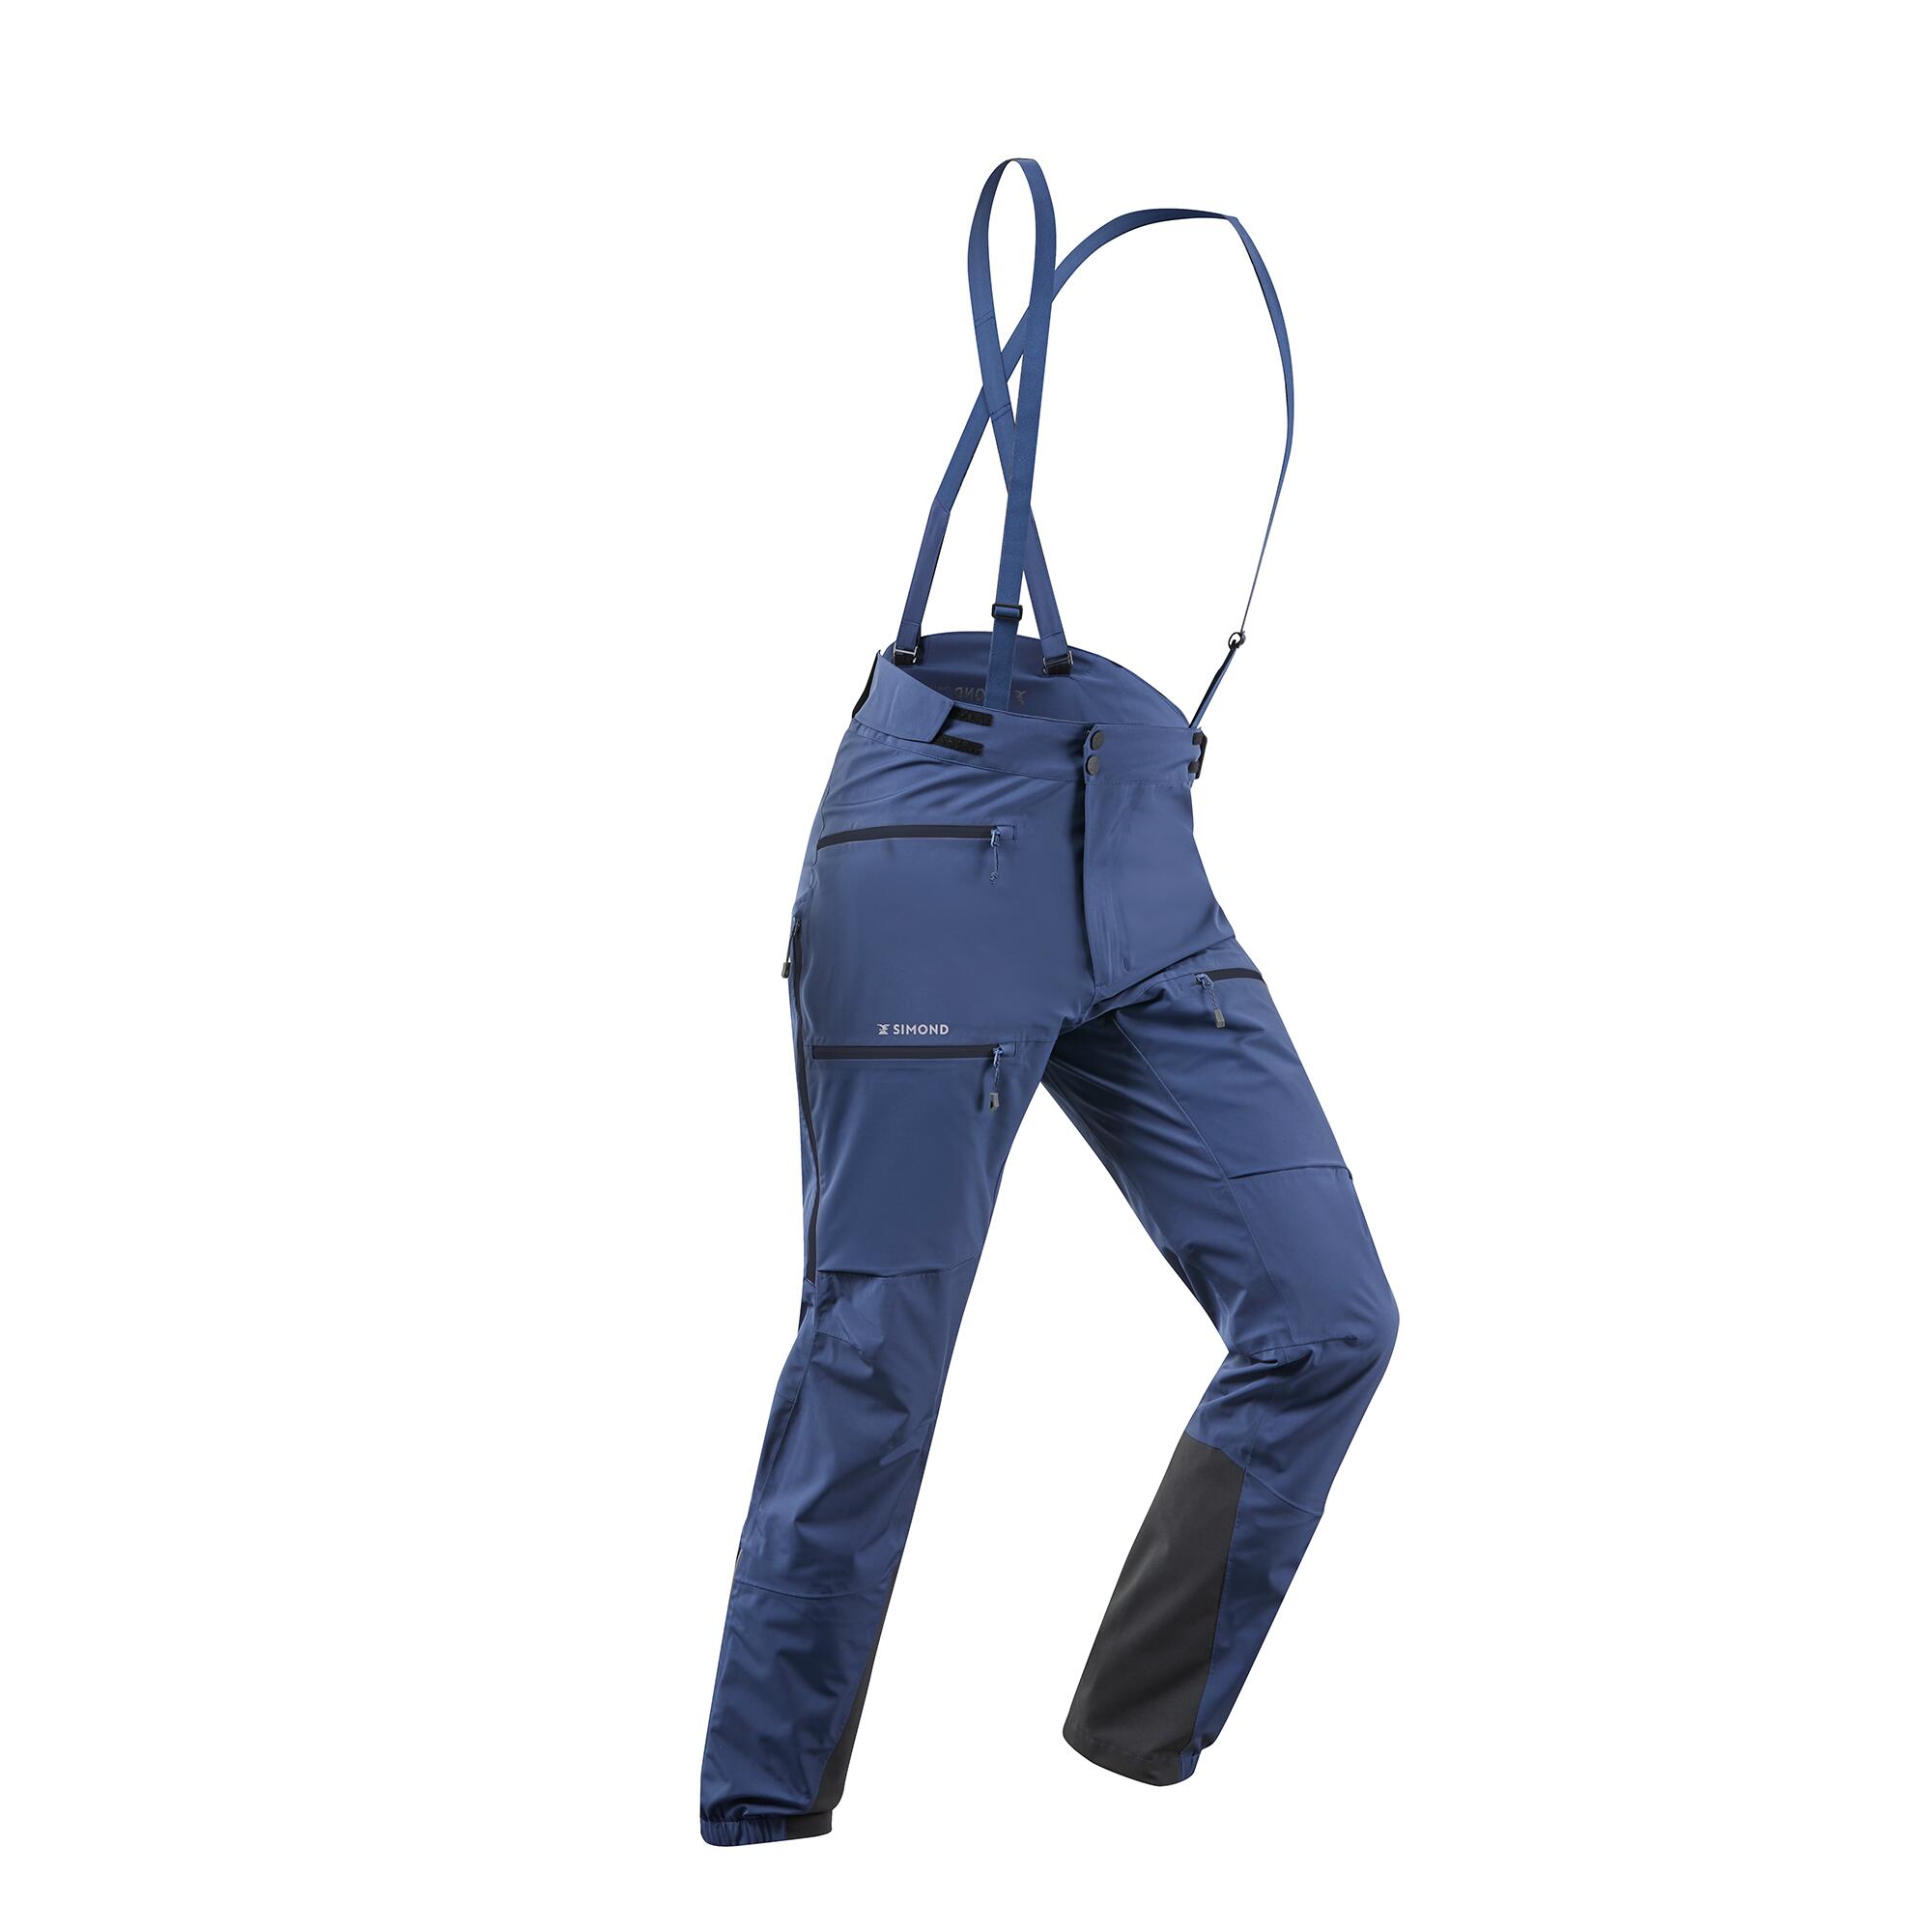 Men's mountaineering waterproof ICE trousers - Slate blue 1/17